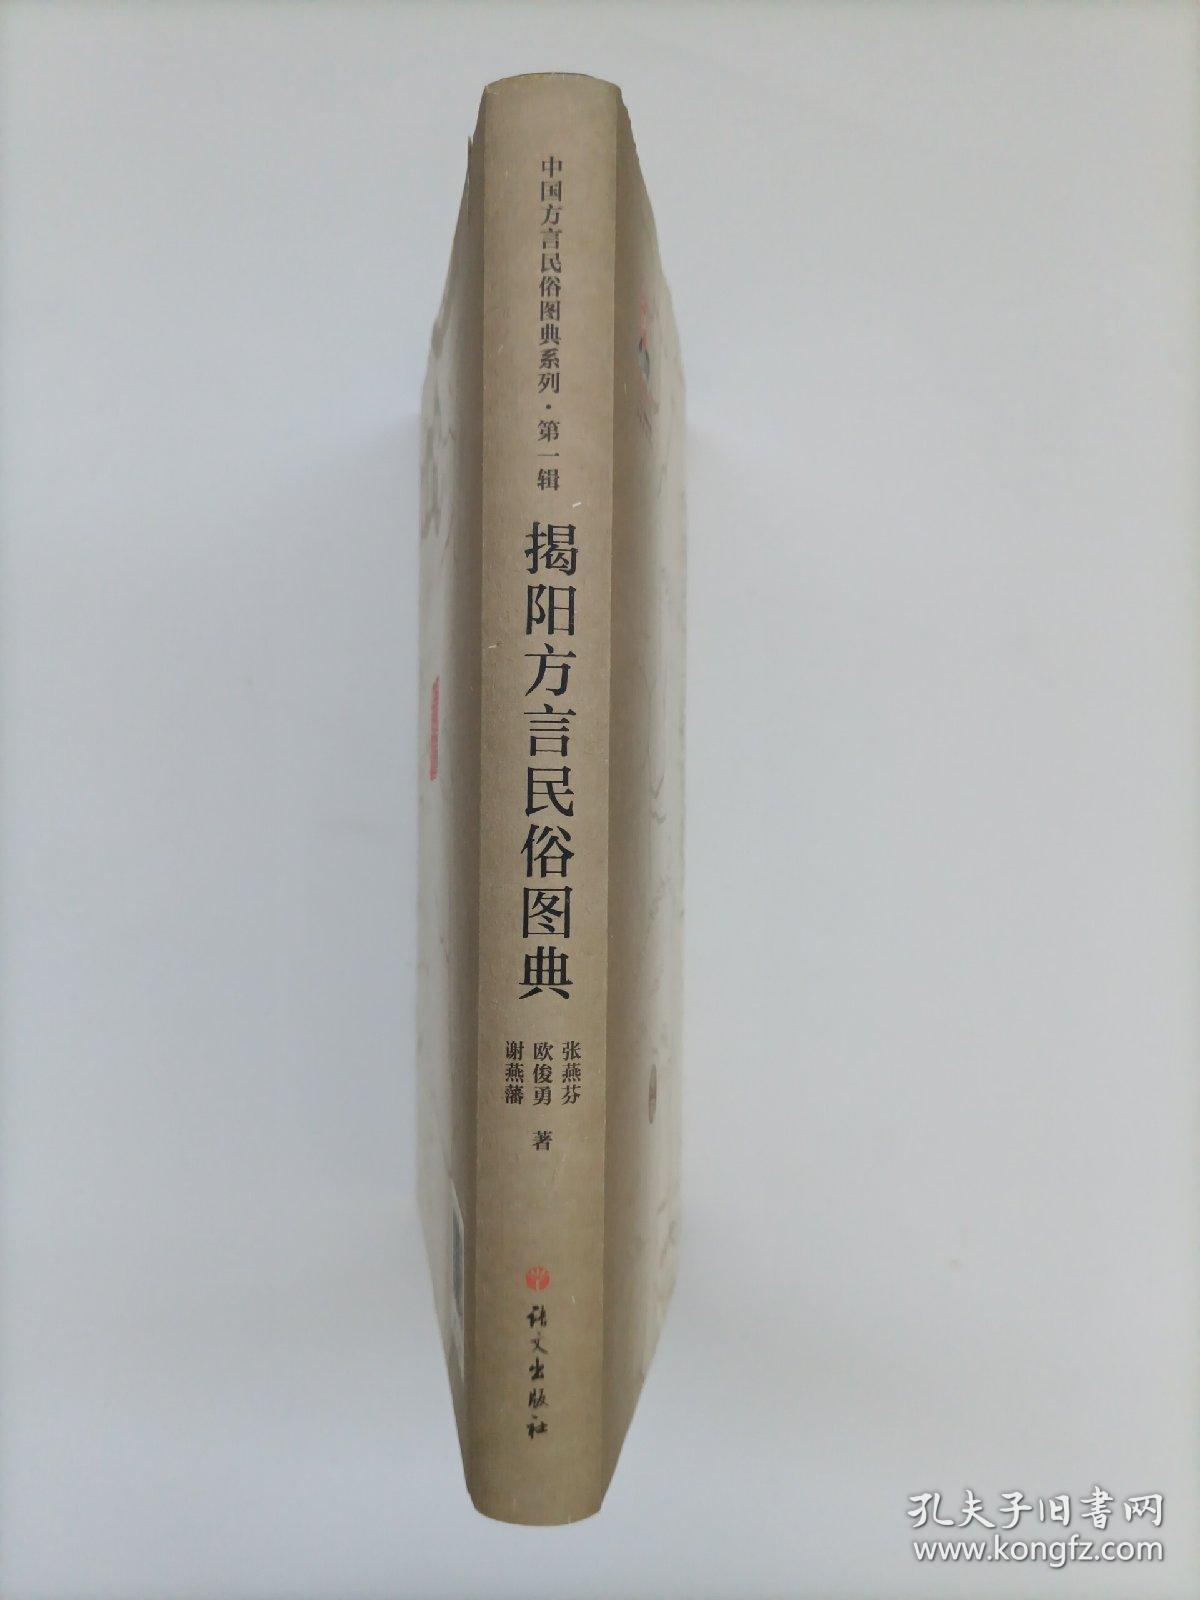 中国方言民俗图典系列（第一辑）：揭阳方言民俗图典